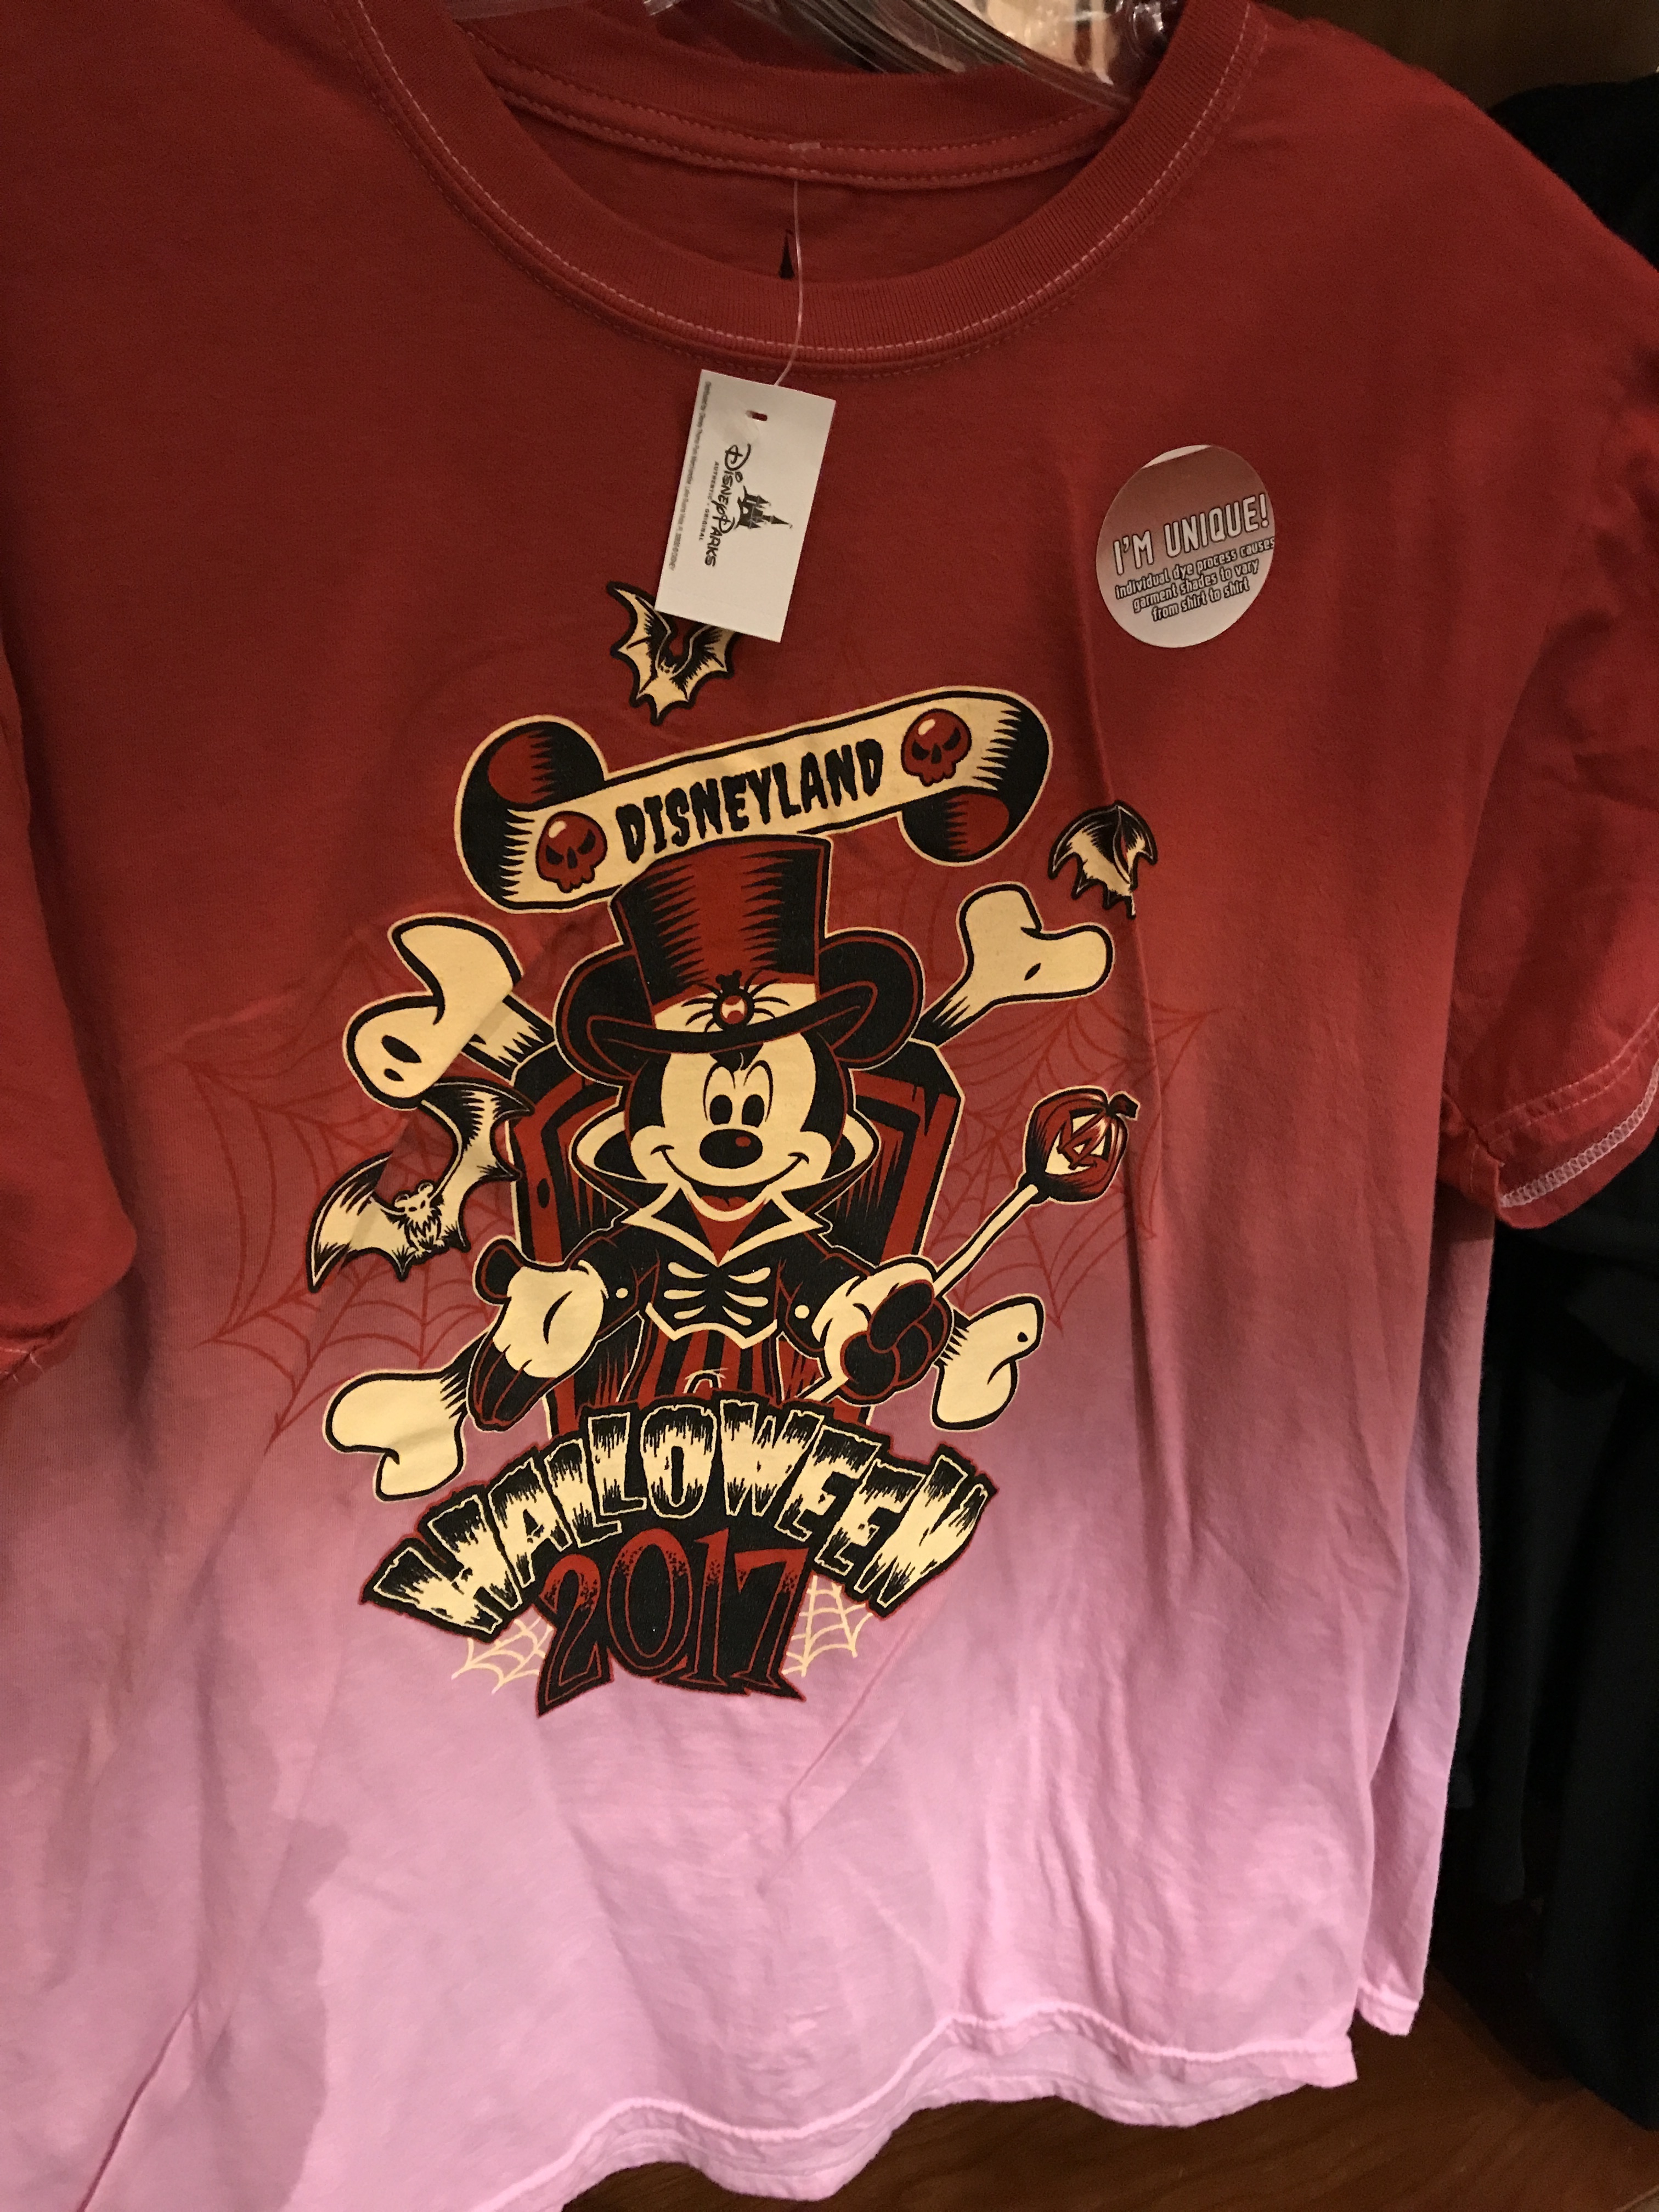 Disneyland Merchandise Update: Halloween Items Arrive for 2017 ...